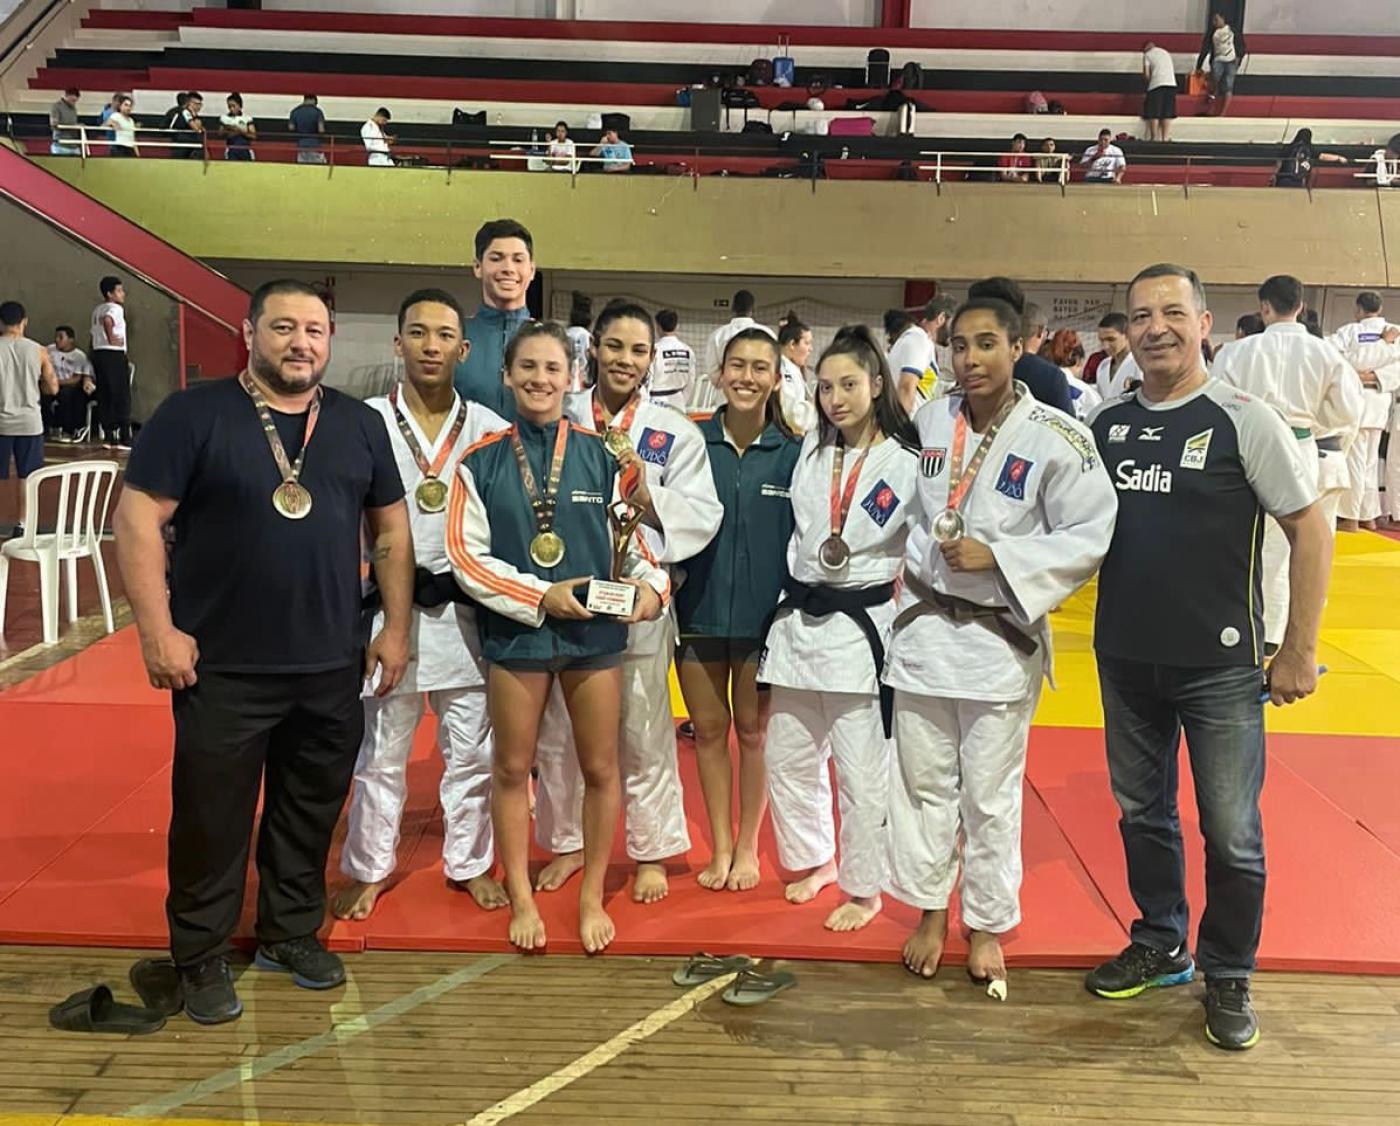 judocas com medalha em cima do tatame #paratodosverem